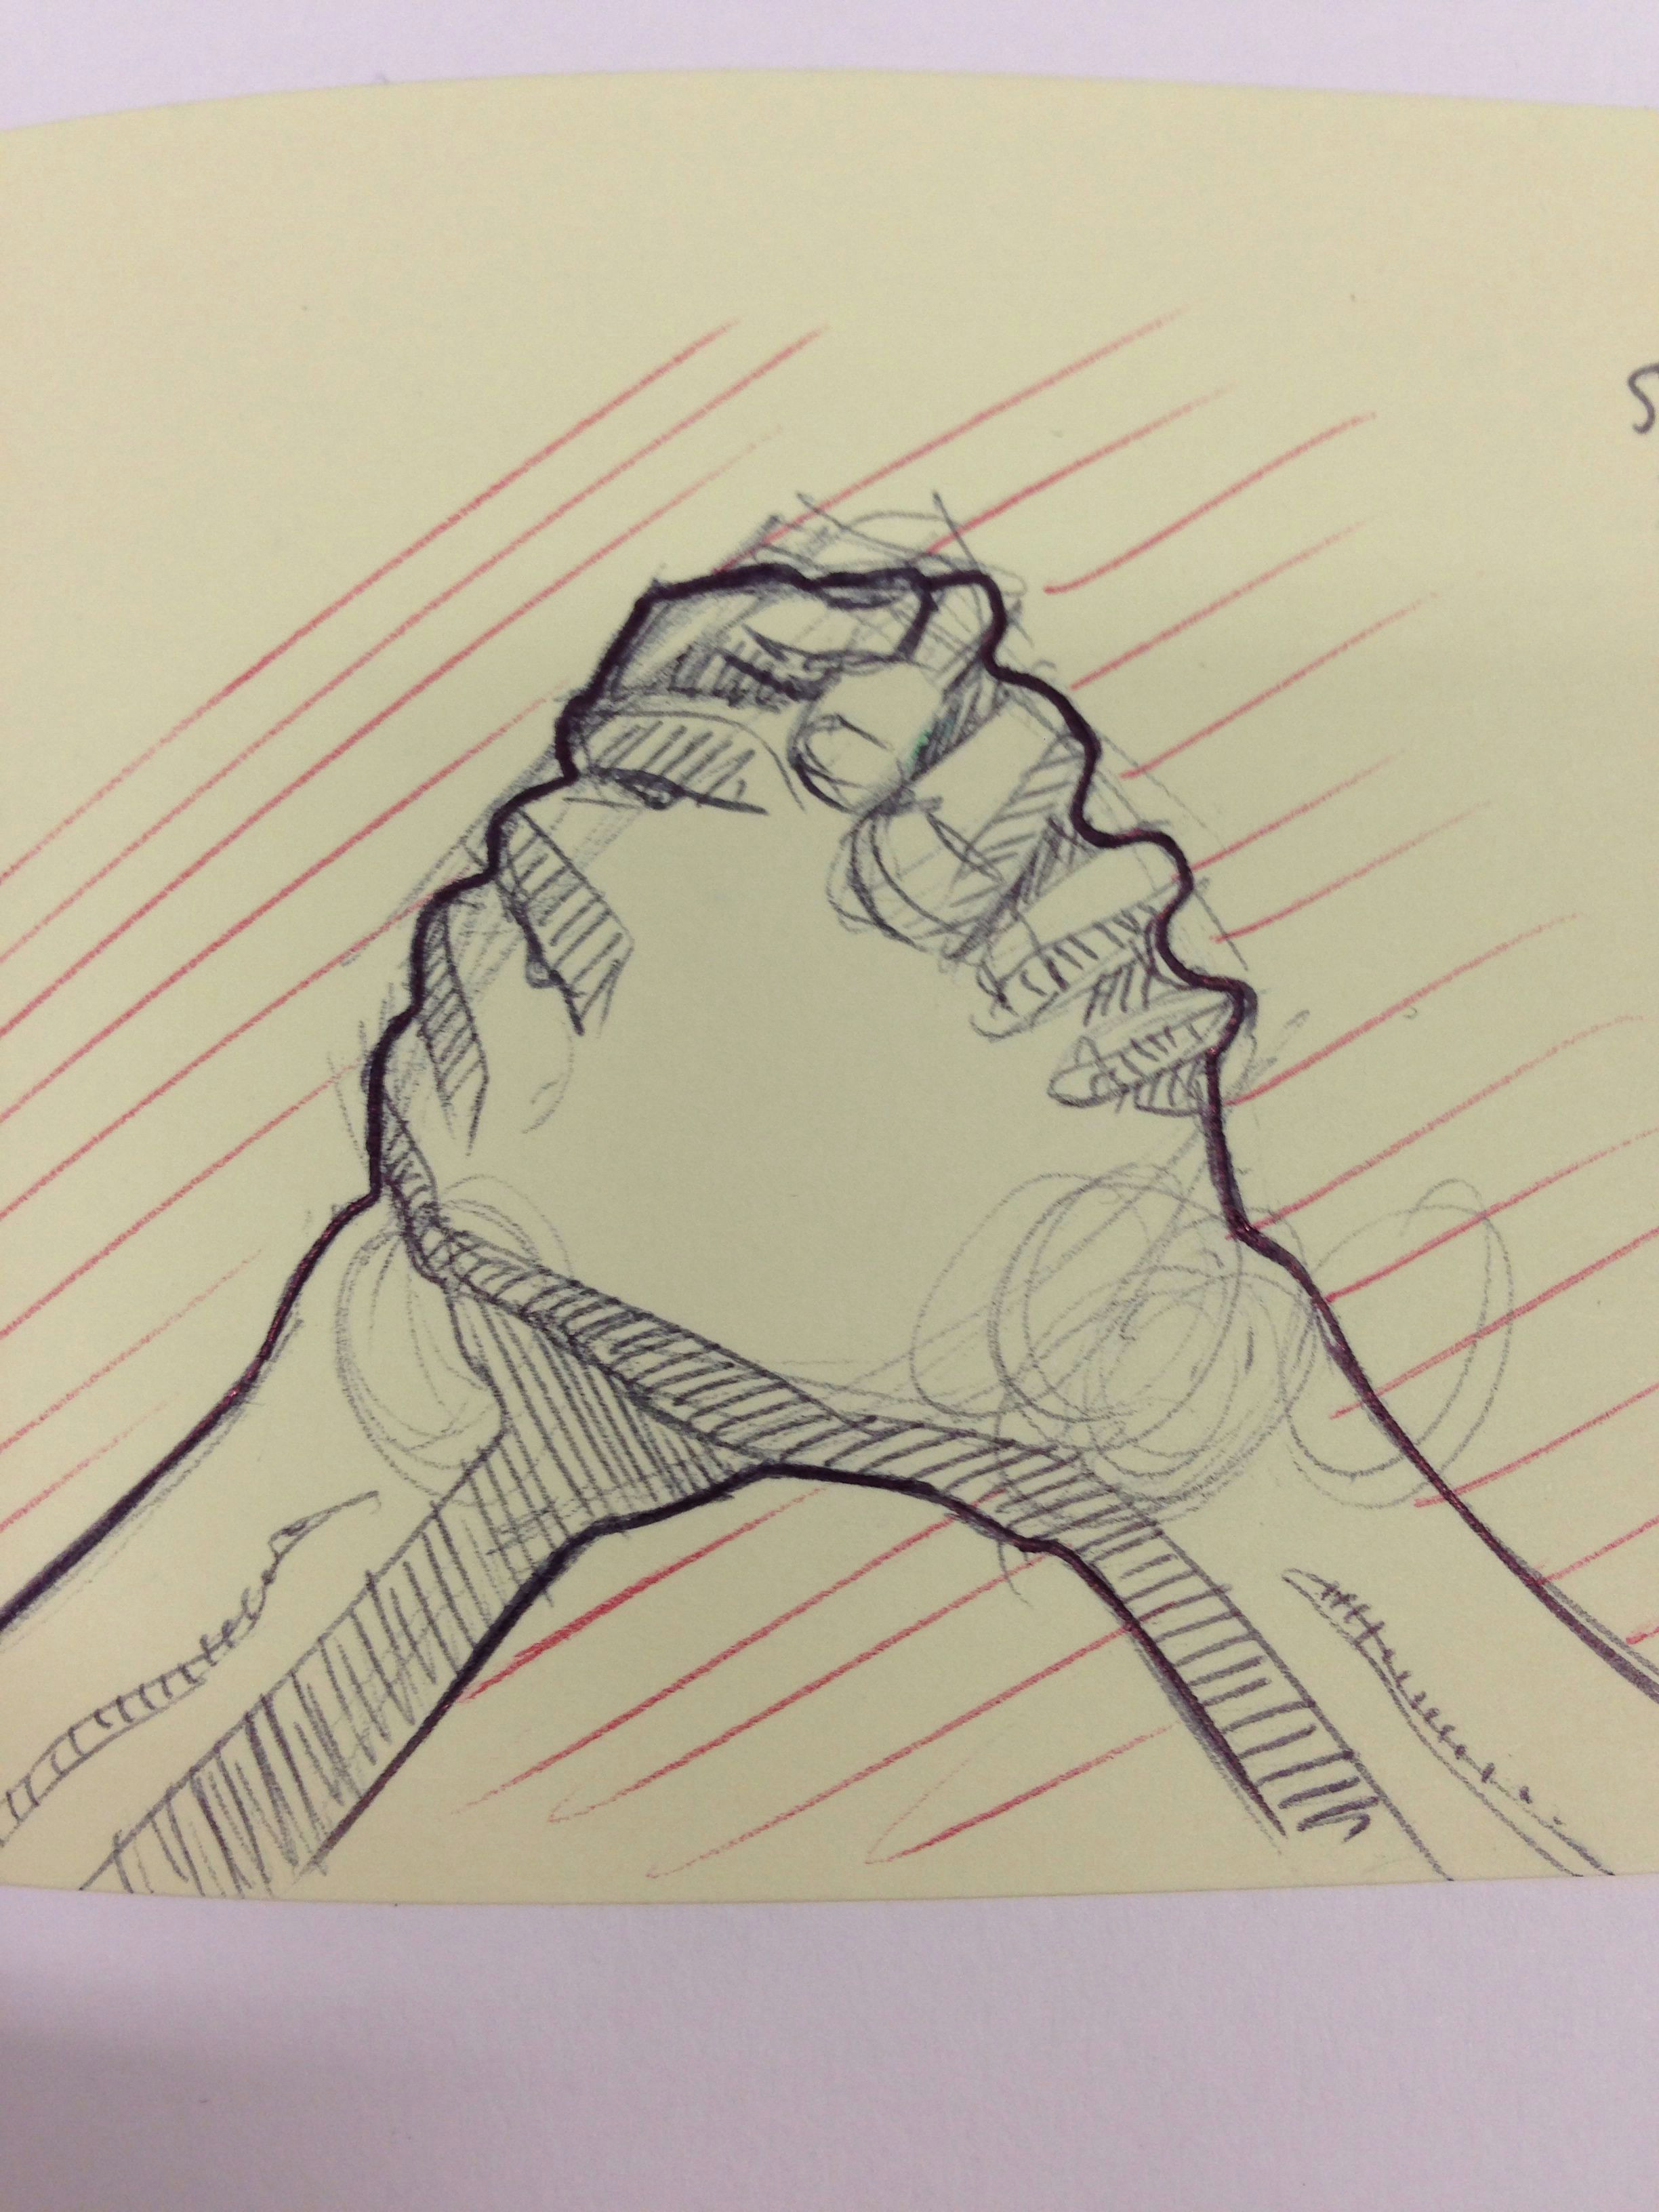 Drawings Of Handshakes Anatomy Of A Handshake Ballpoint Sketch Jack Darby Love In